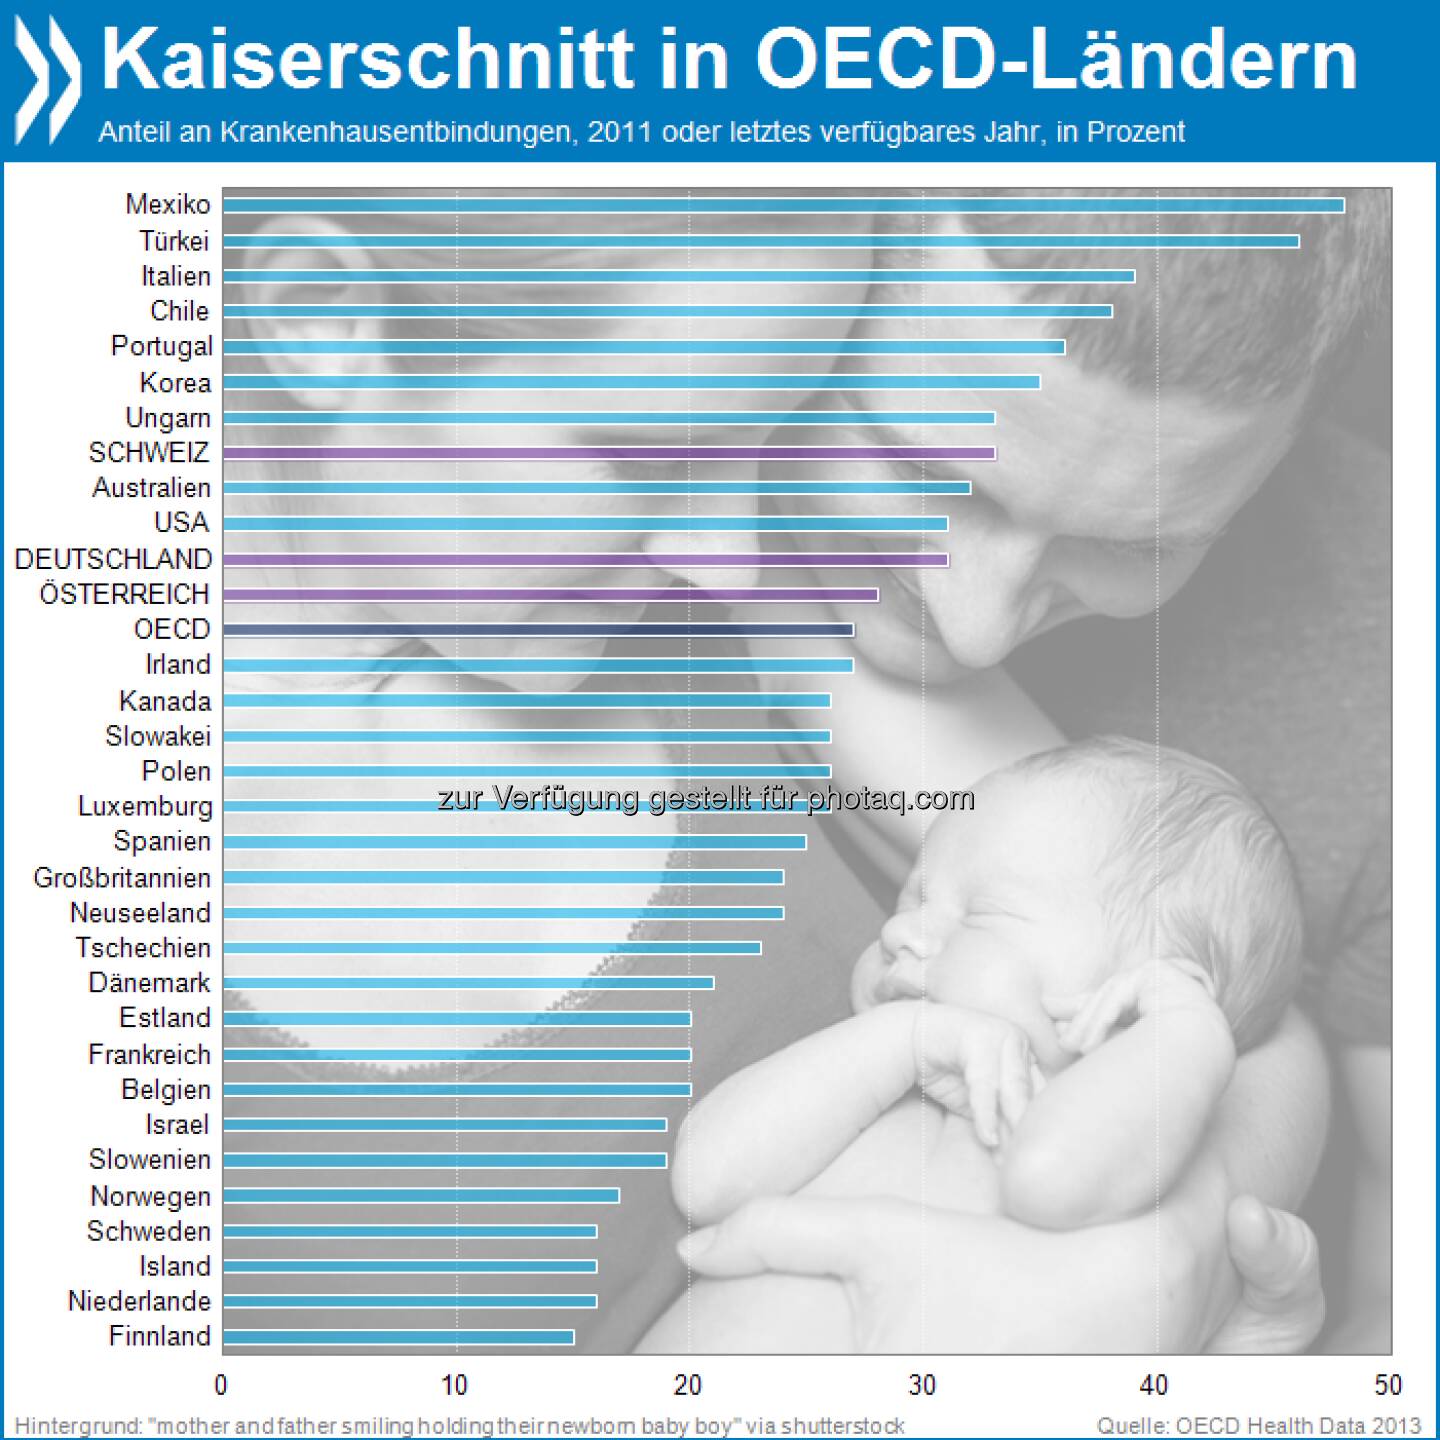 Leichte(re) Geburt? In Deutschland und der Schweiz werden gut ein Drittel aller Kinder per Kaiserschnitt entbunden. Das ist mehr als im OECD-Mittel. Am meisten Babys erblicken so das Licht der Welt in Mexiko.

Mehr unter http://bit.ly/1dcYEZk (OECD Health Data 2013)